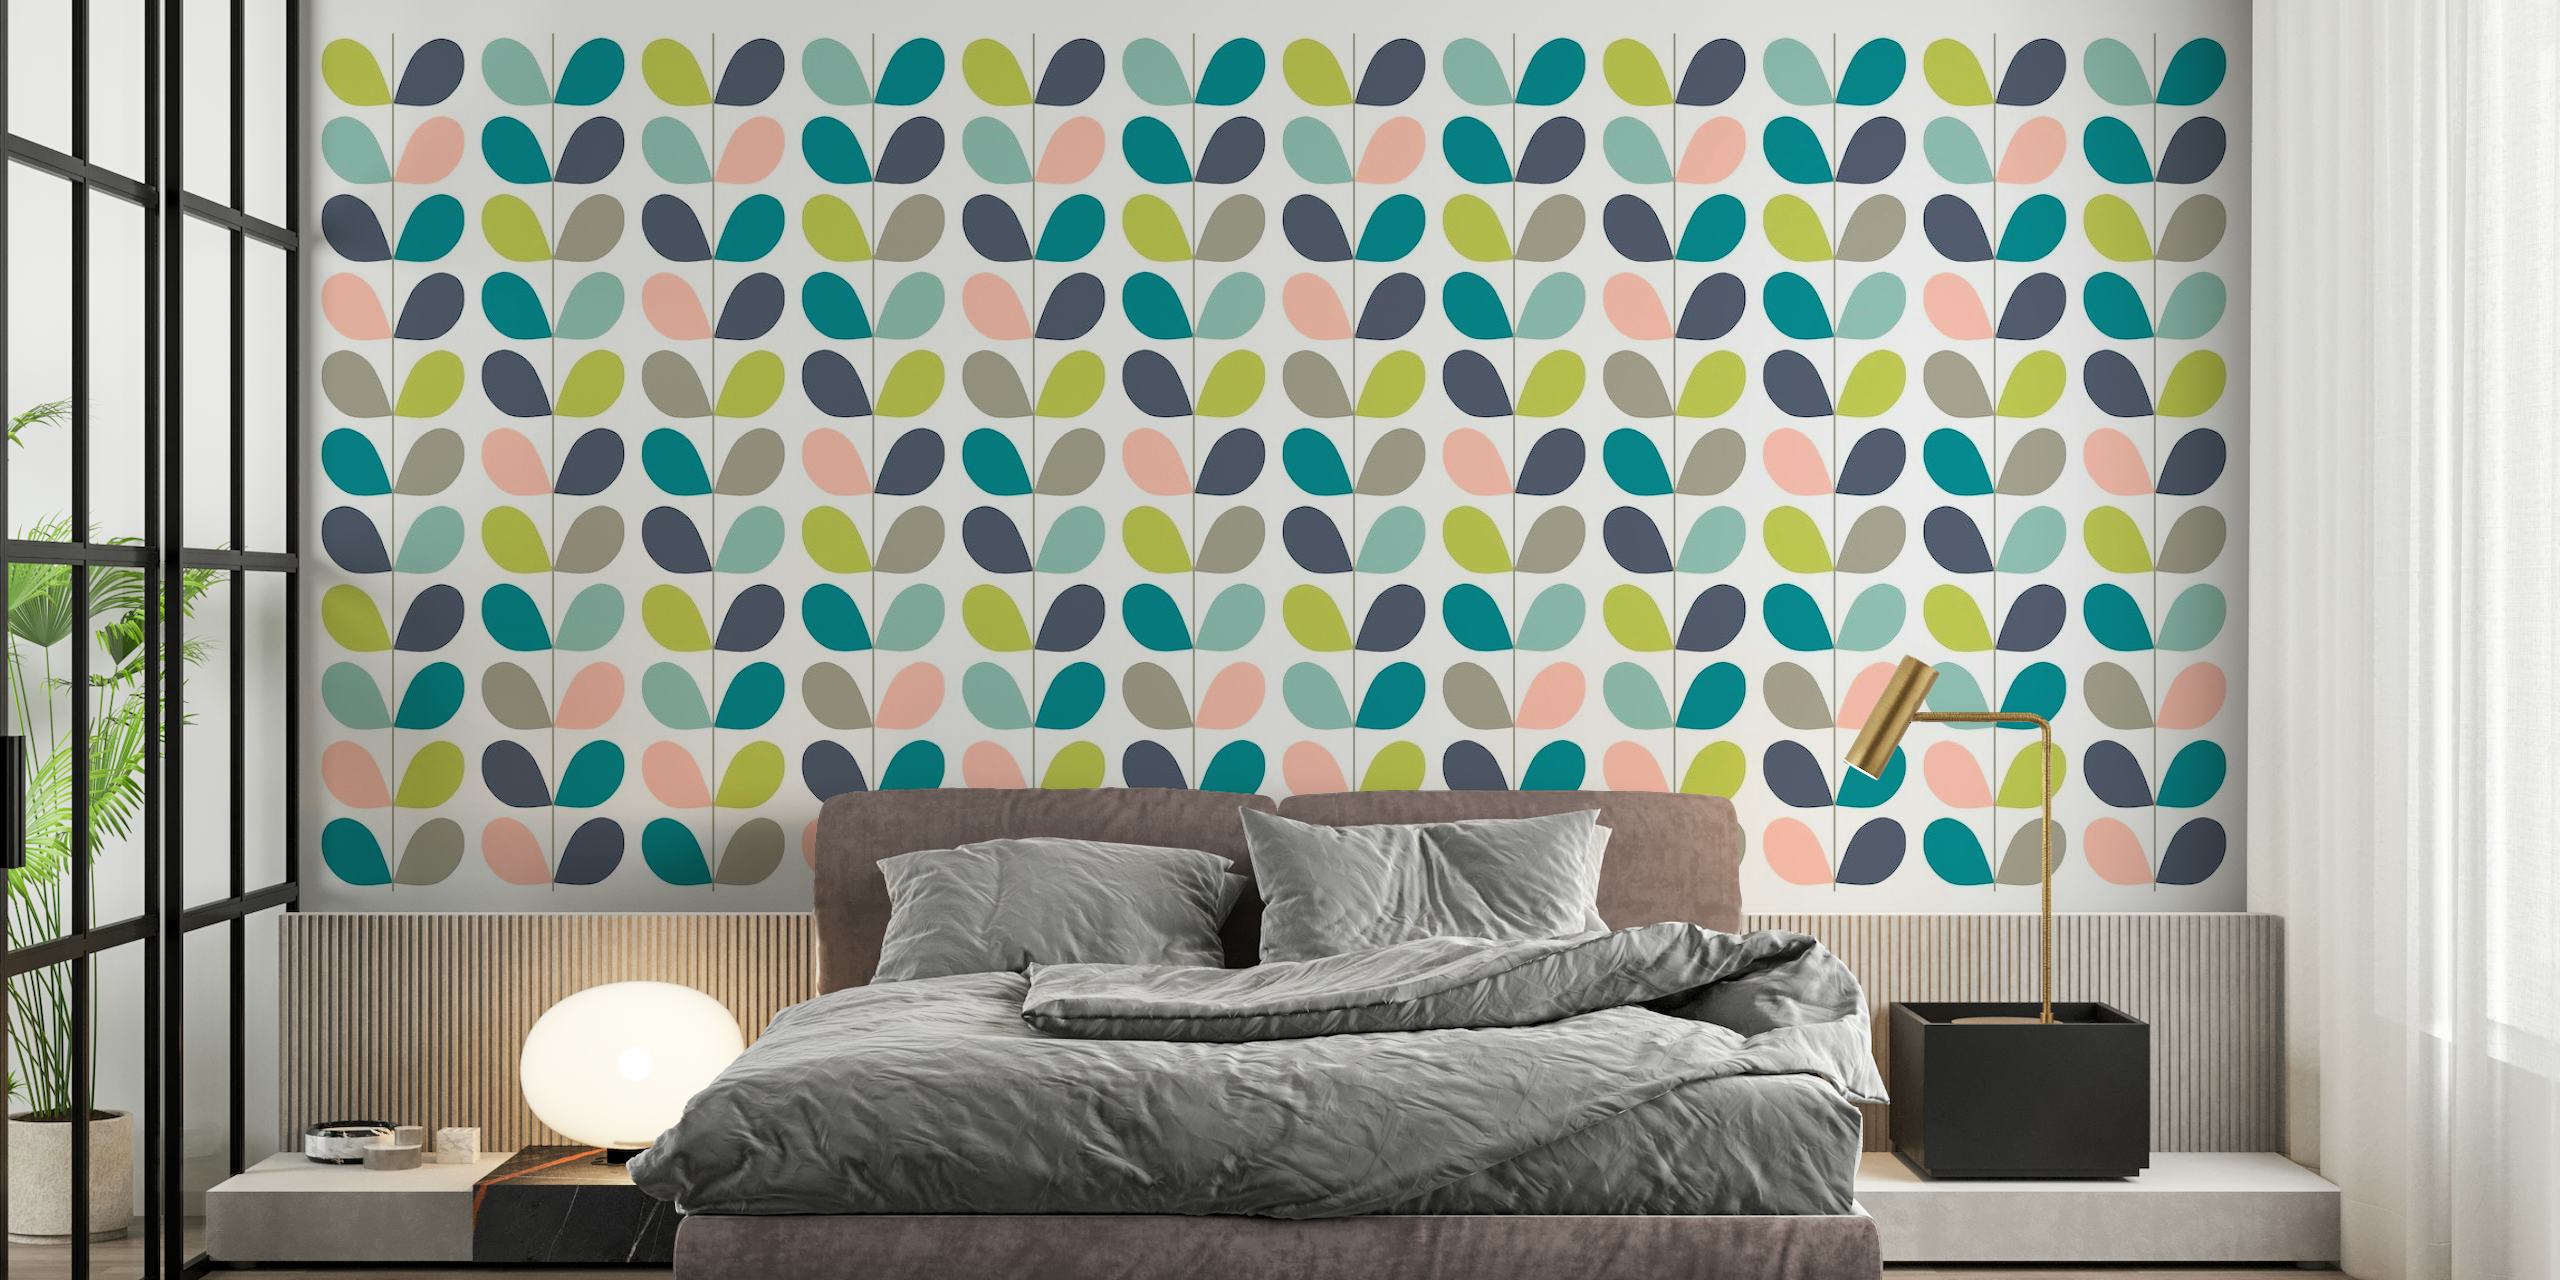 Stiliserede pastelblade i et minimalistisk vægmalerimønster